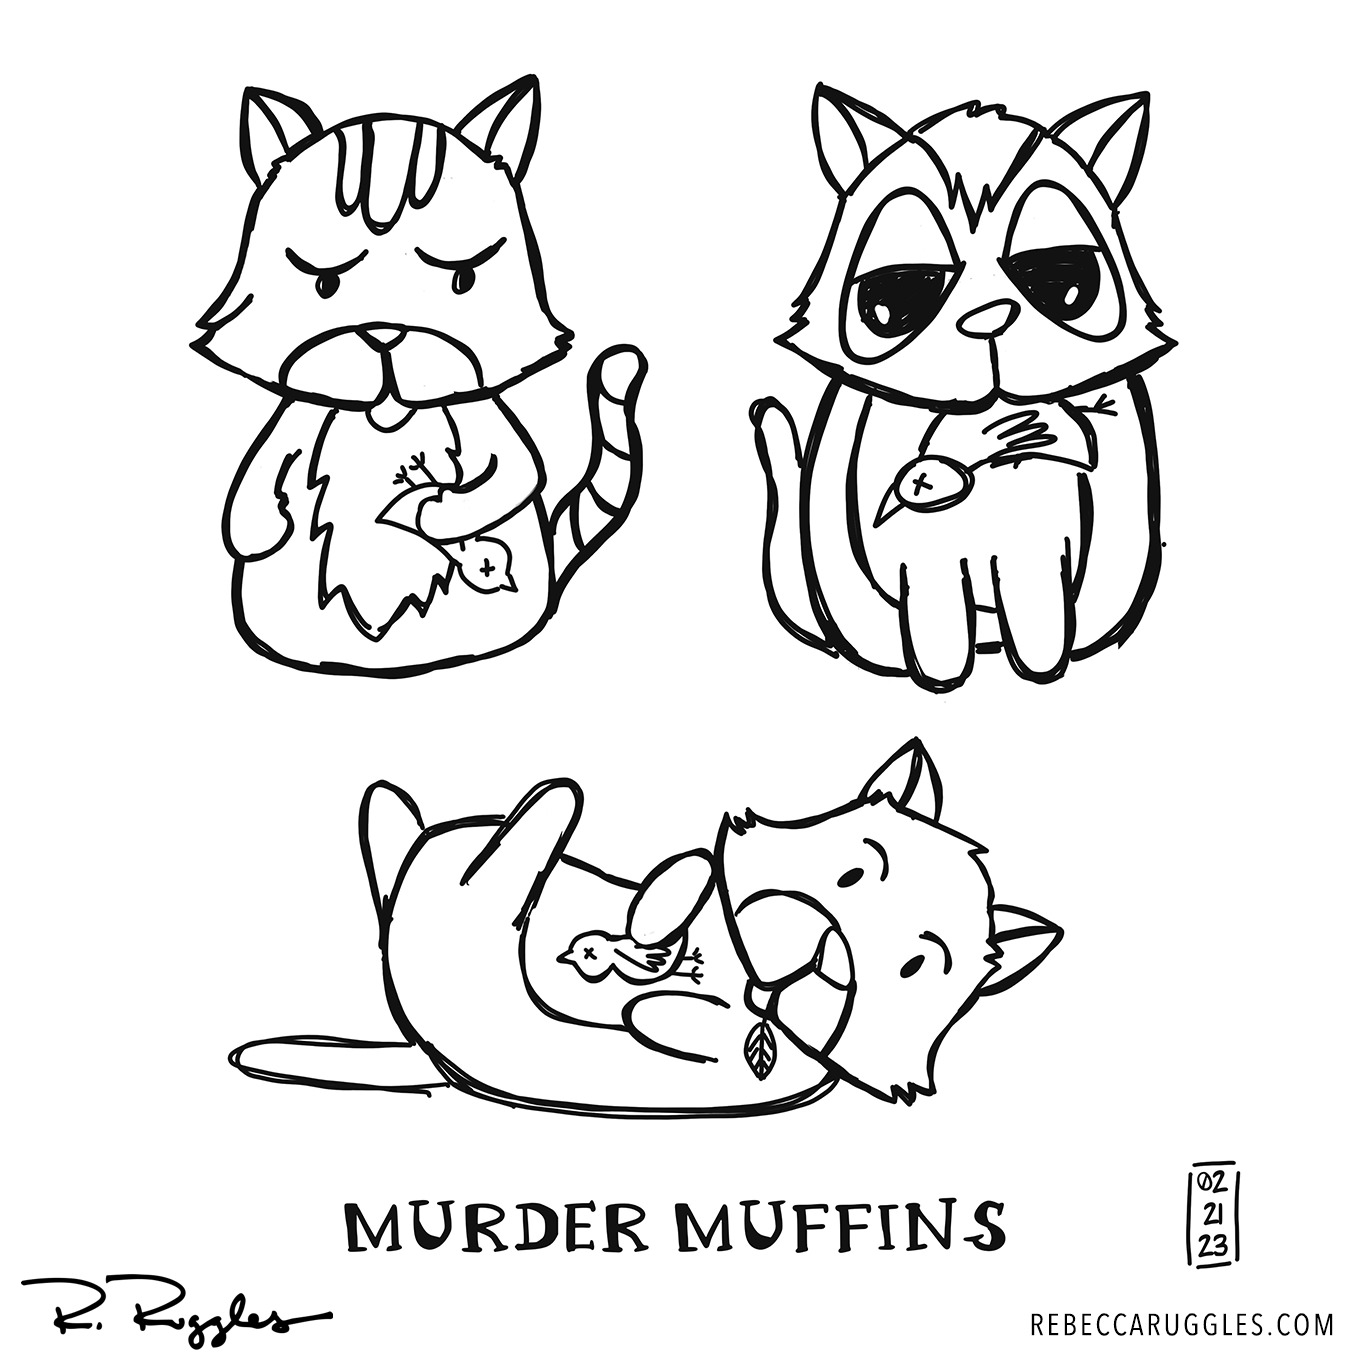 Murder Muffin drawing in procreate by Rebecca Ruggles